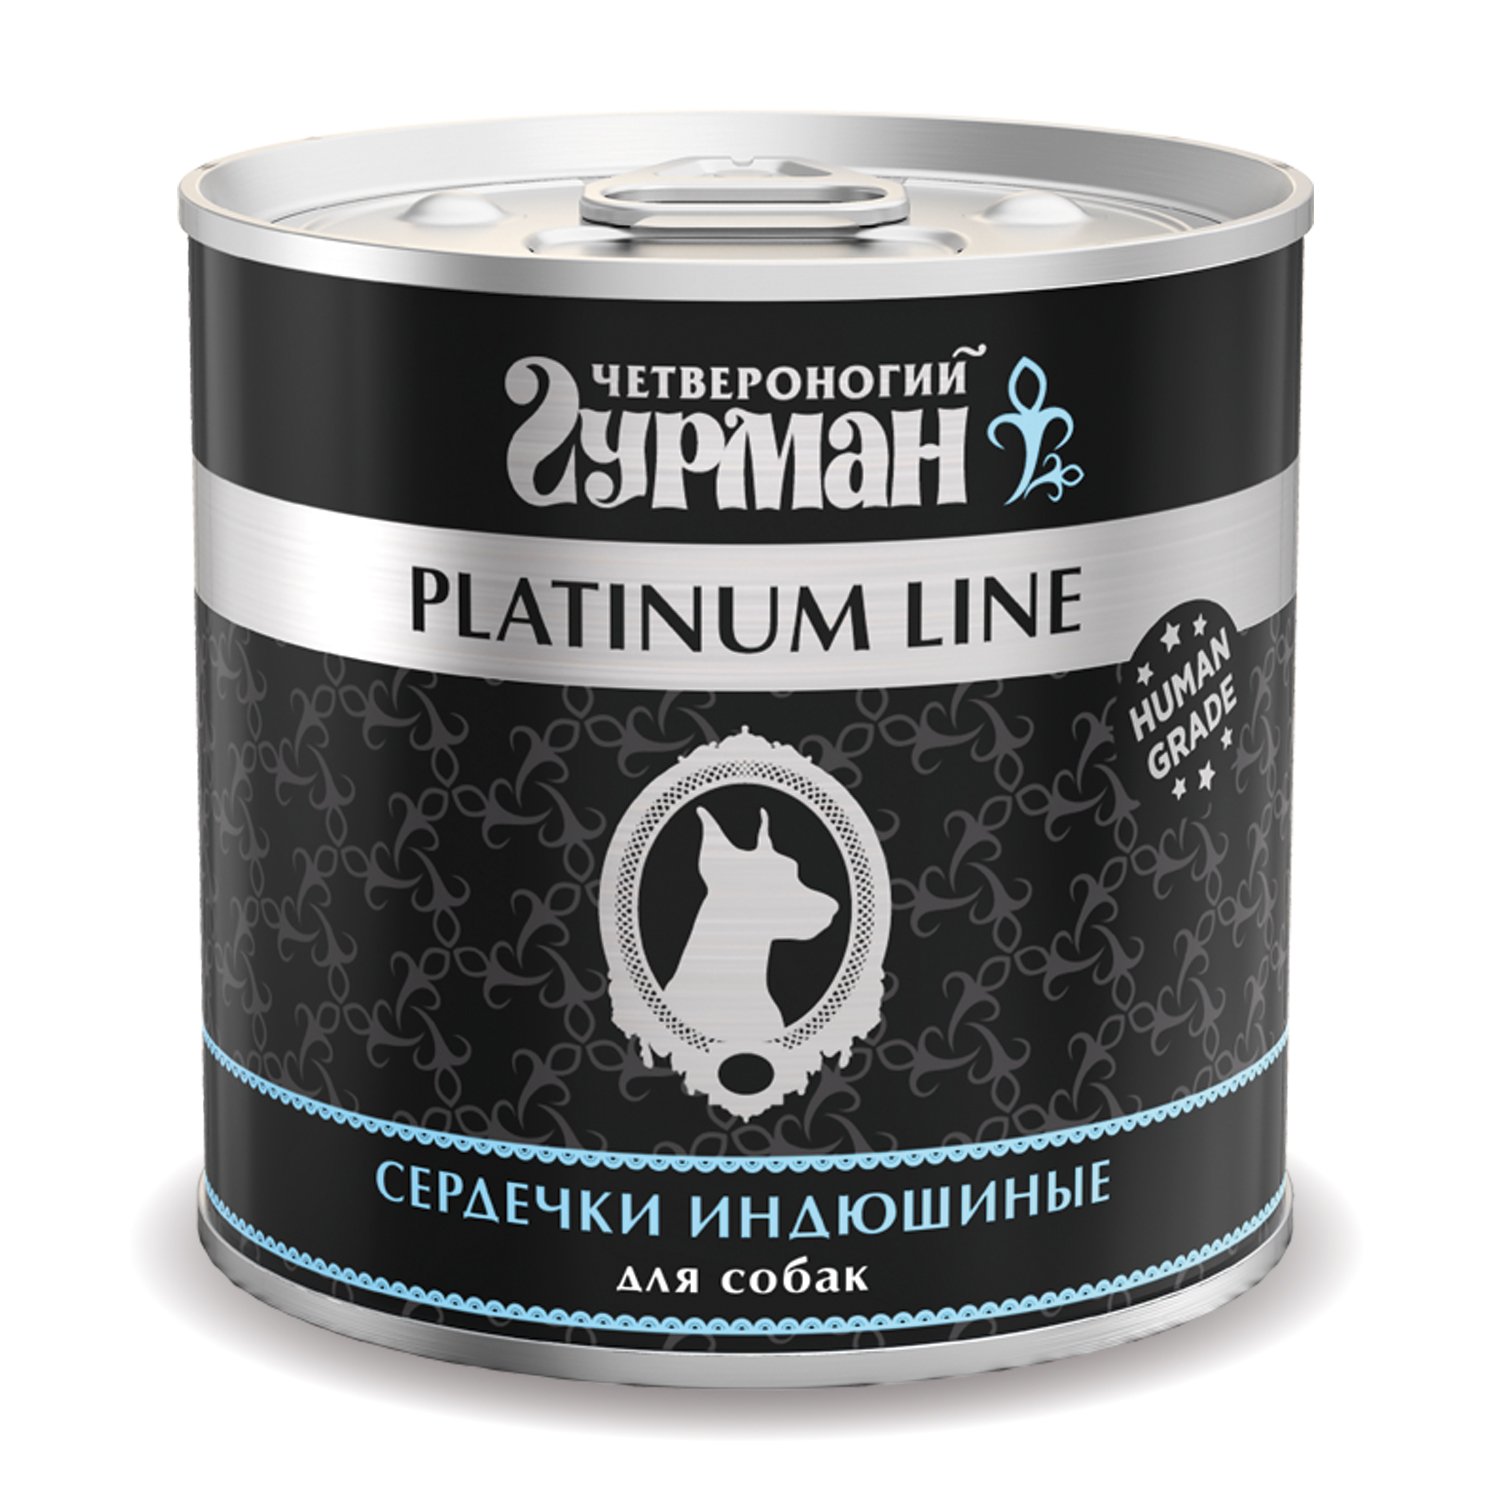 Корм для собак Четвероногий Гурман 240г Platinum сердечки индюшиные в желе - фото 1